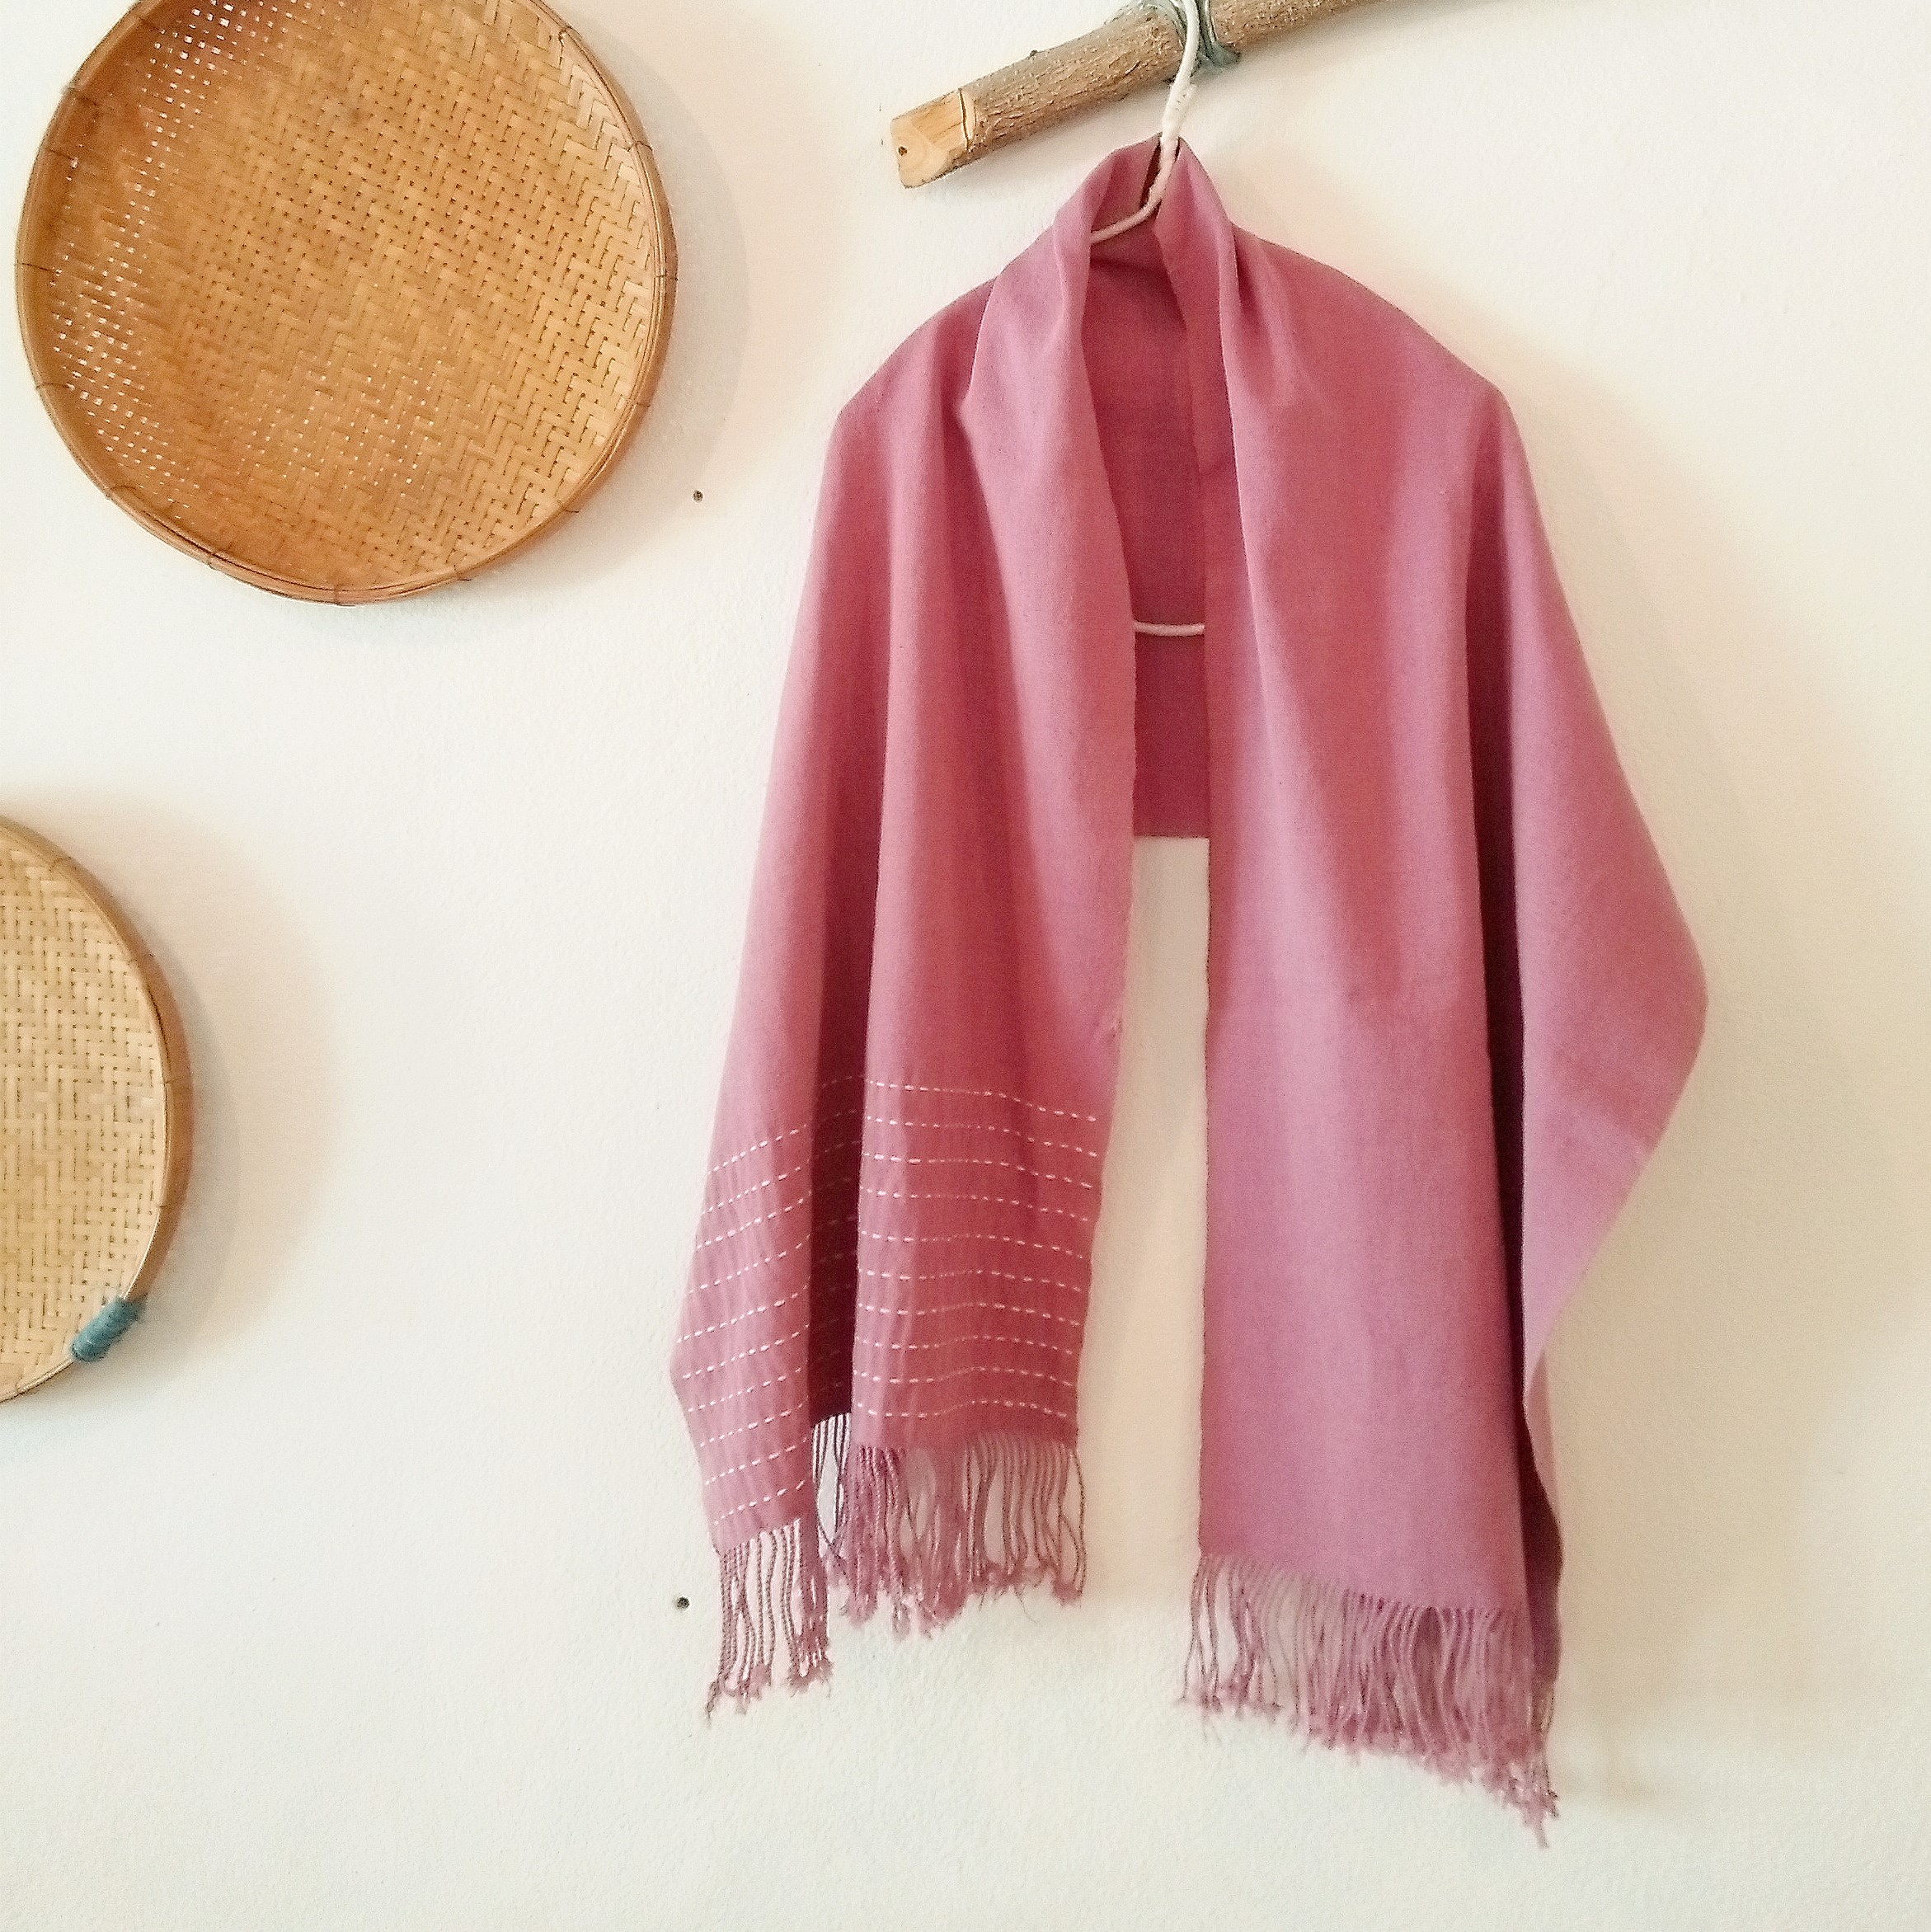 セール価格 タイの手織りちくちくストール 草木染め ピンク 150cm Iichi ハンドメイド クラフト作品 手仕事品の通販